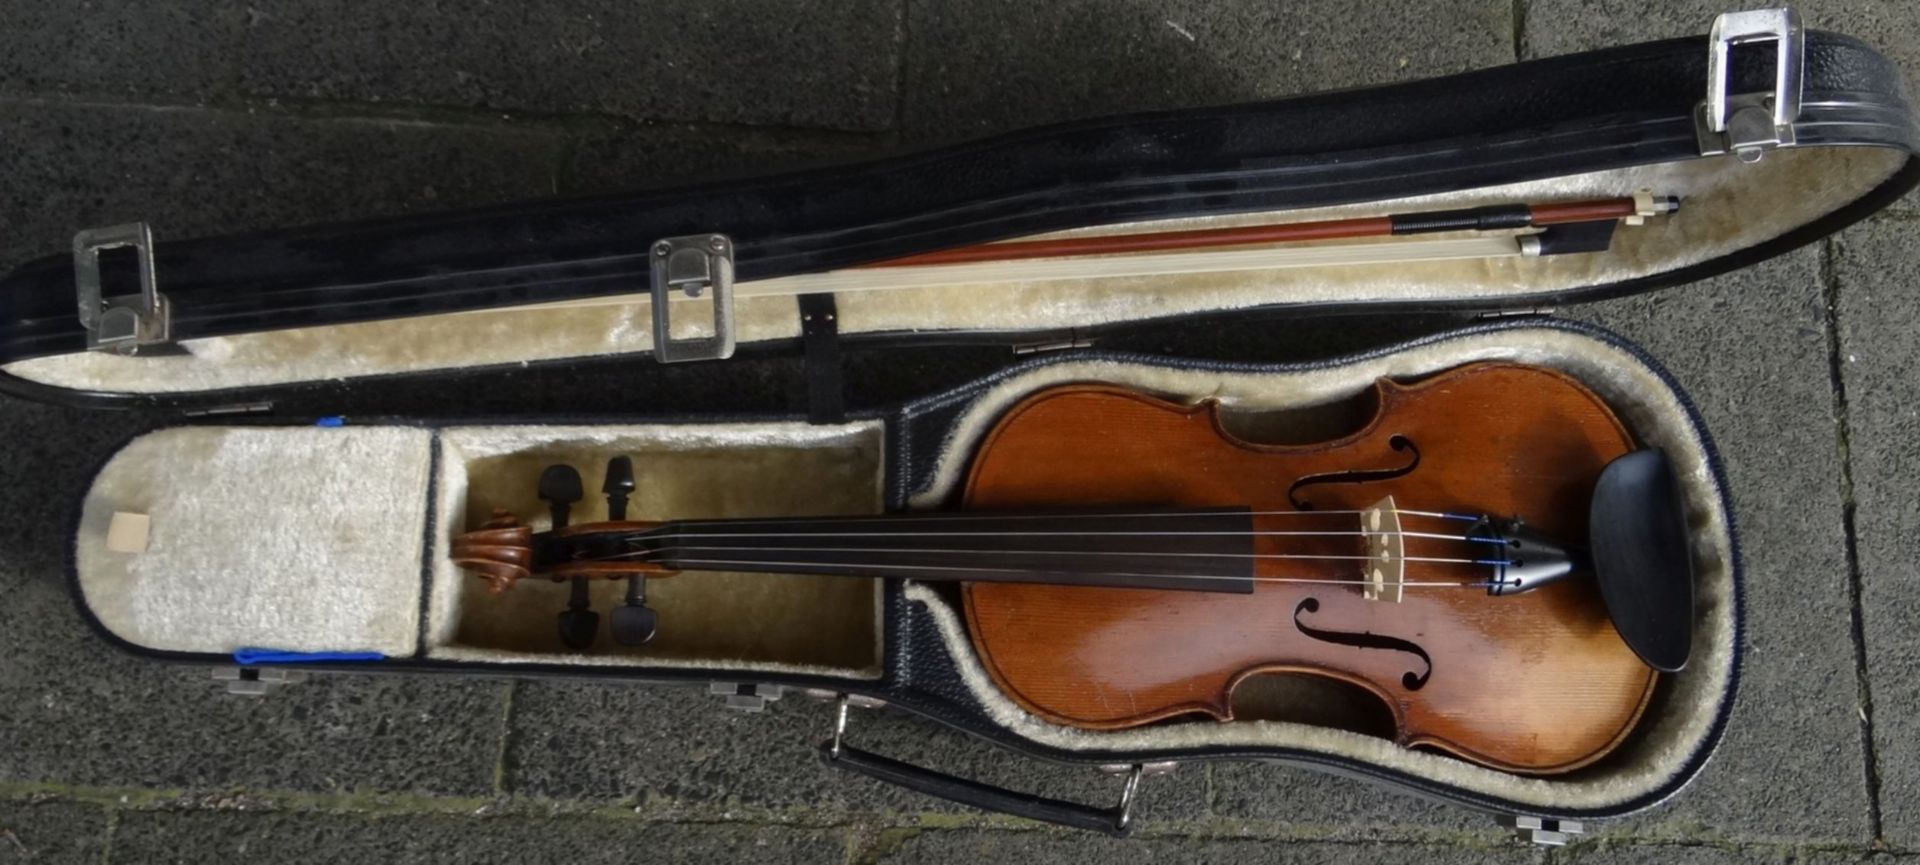 alte Geige in Koffer, guter Zustand, mit Bogen, Geige L-60 cm, - Bild 7 aus 7